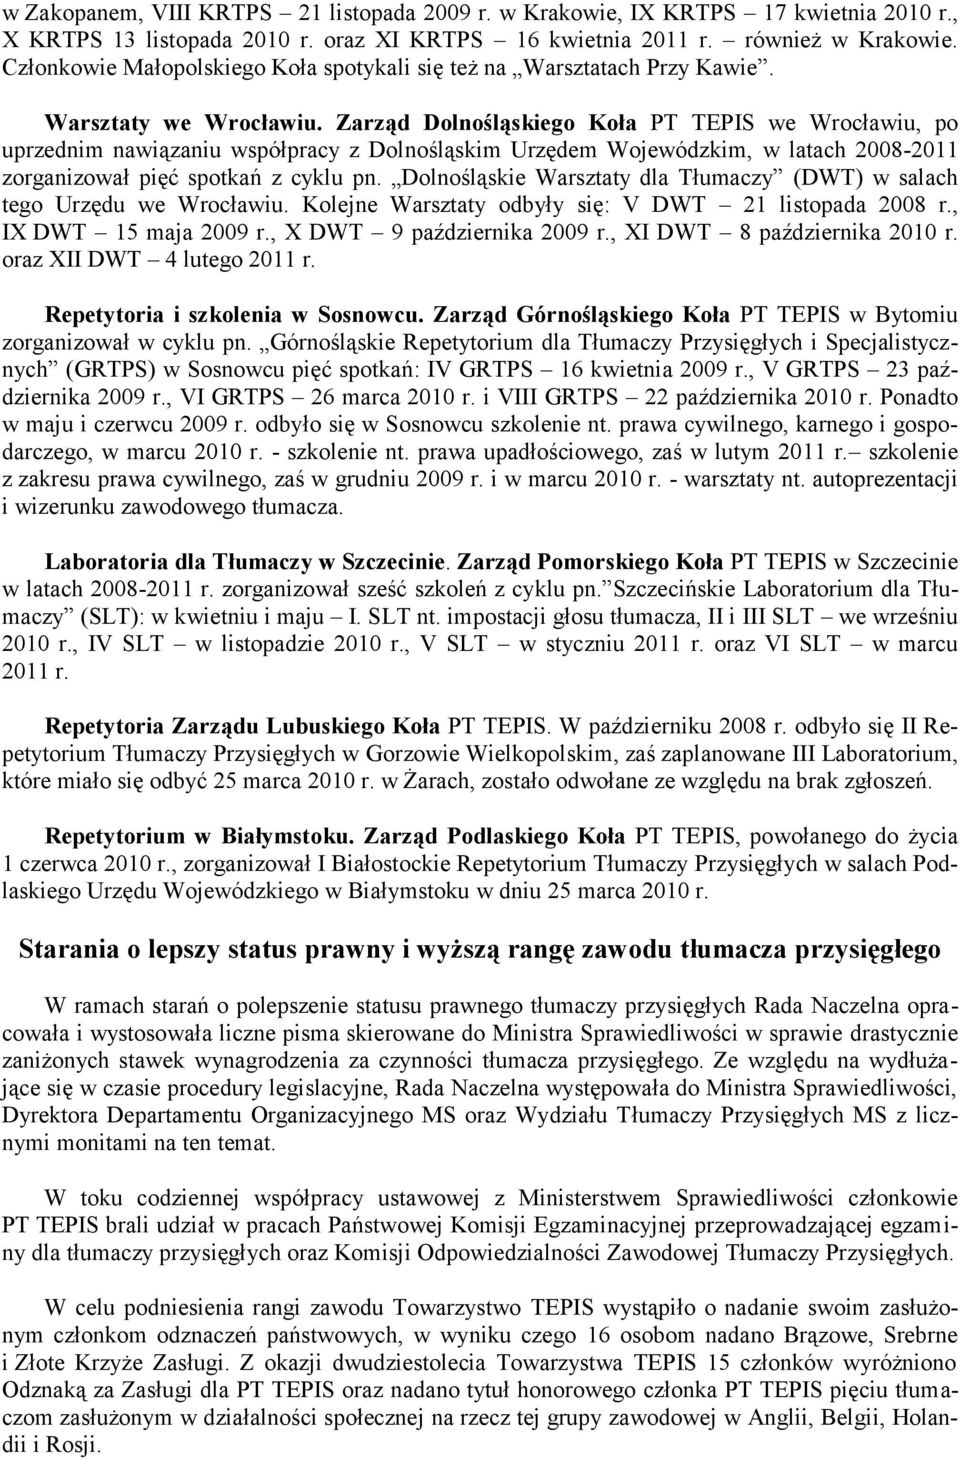 Zarząd Dolnośląskiego Koła PT TEPIS we Wrocławiu, po uprzednim nawiązaniu współpracy z Dolnośląskim Urzędem Wojewódzkim, w latach 2008-2011 zorganizował pięć spotkań z cyklu pn.